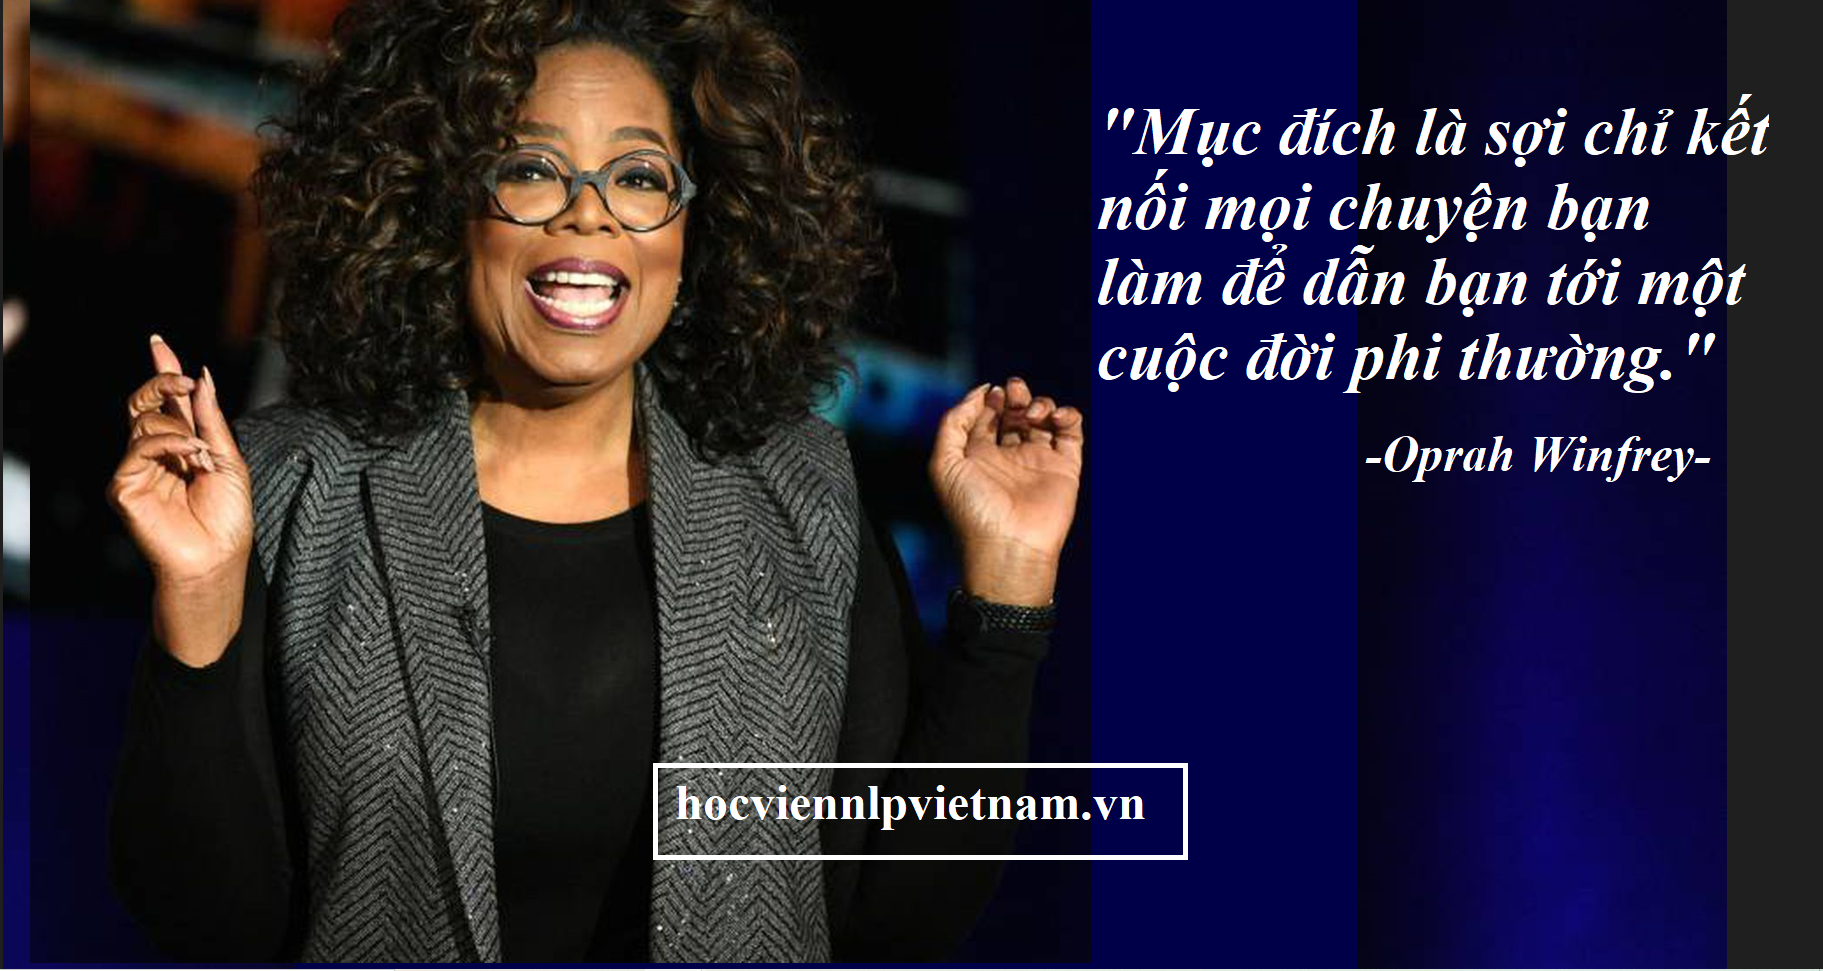 Oprah Winfrey la ai